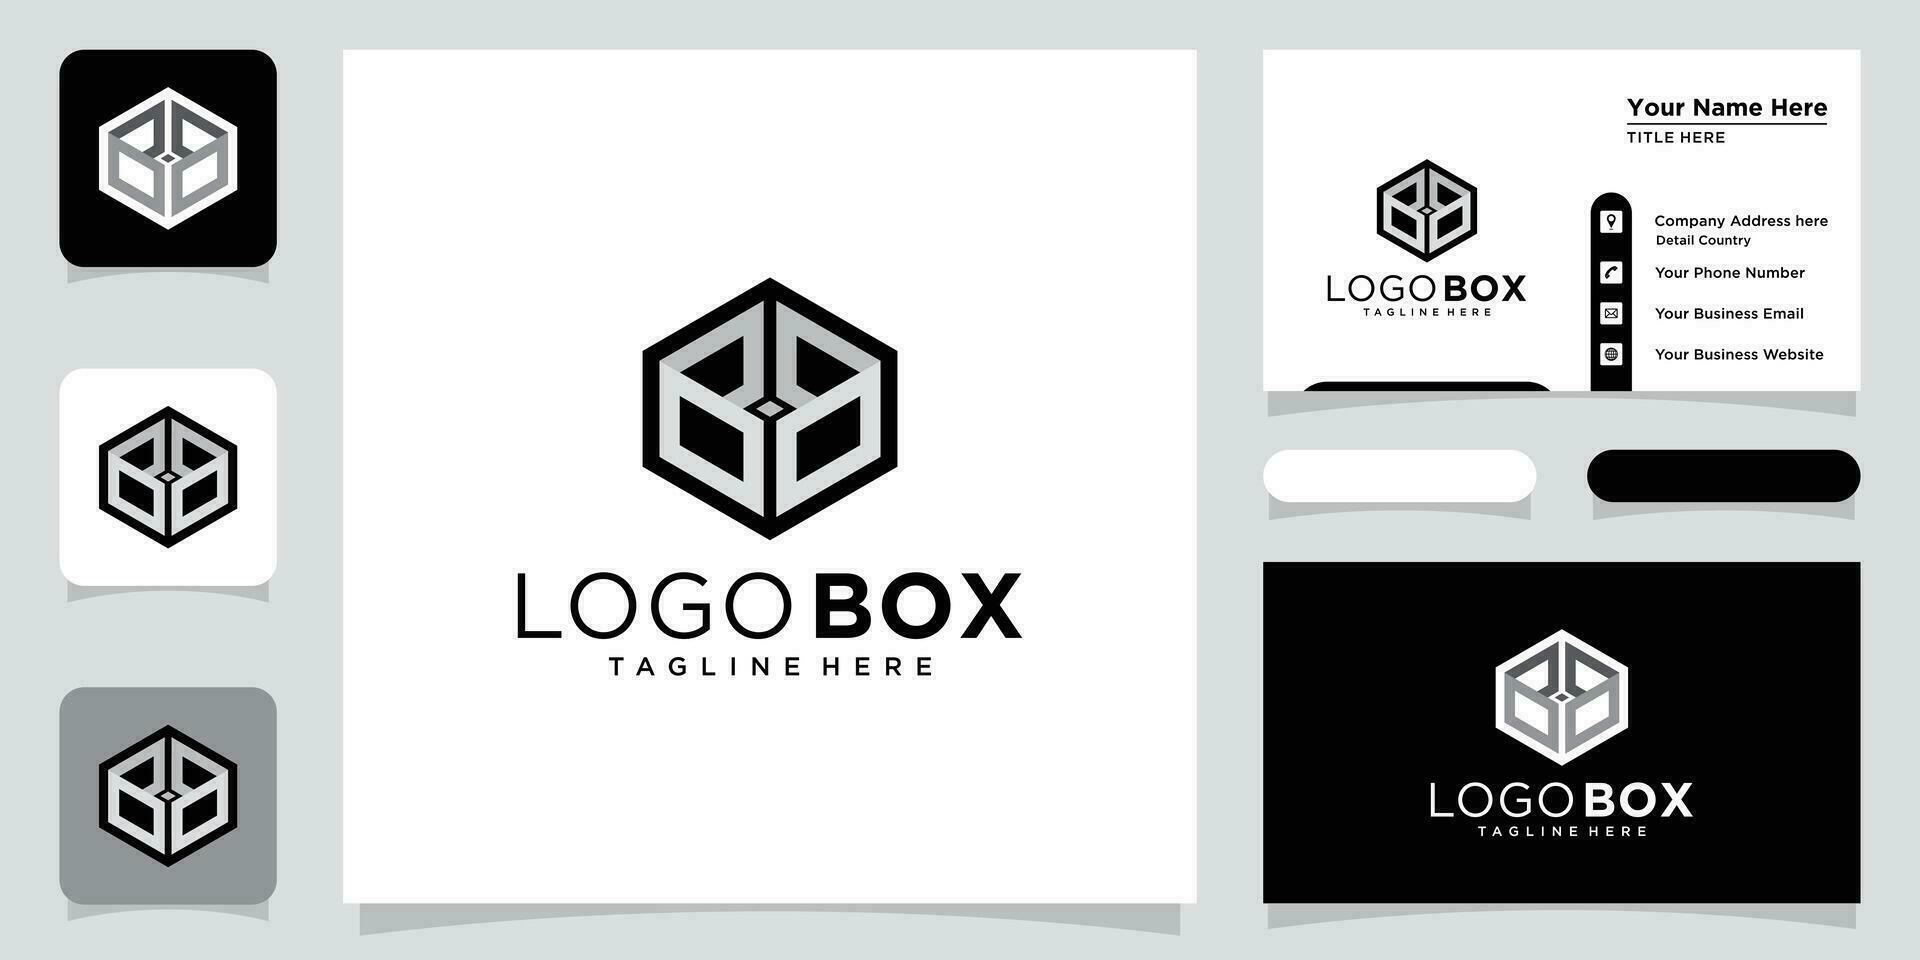 Abstract Cube Hexagon or Logo Box Design Vector Illustration